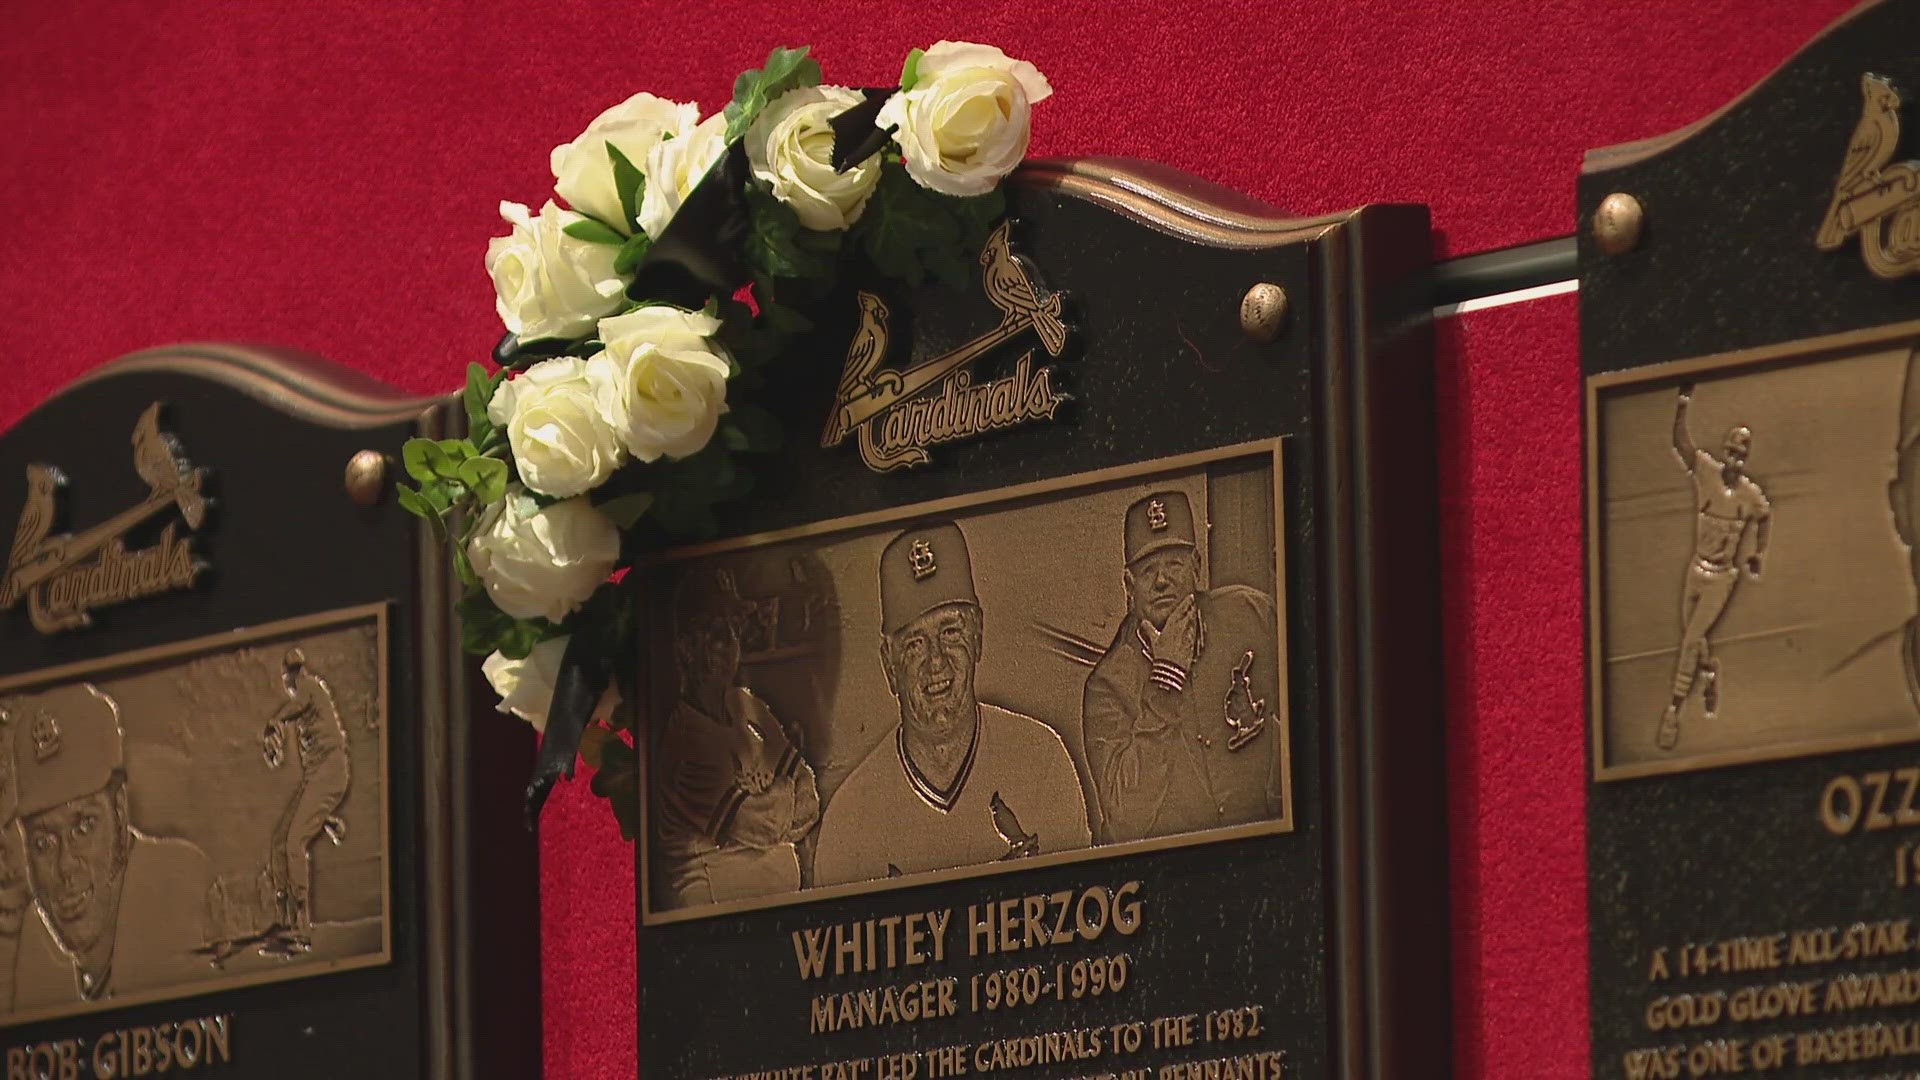 Legendary St. Louis Cardinals manager Whitey Herzog has died. Herzog was 92.